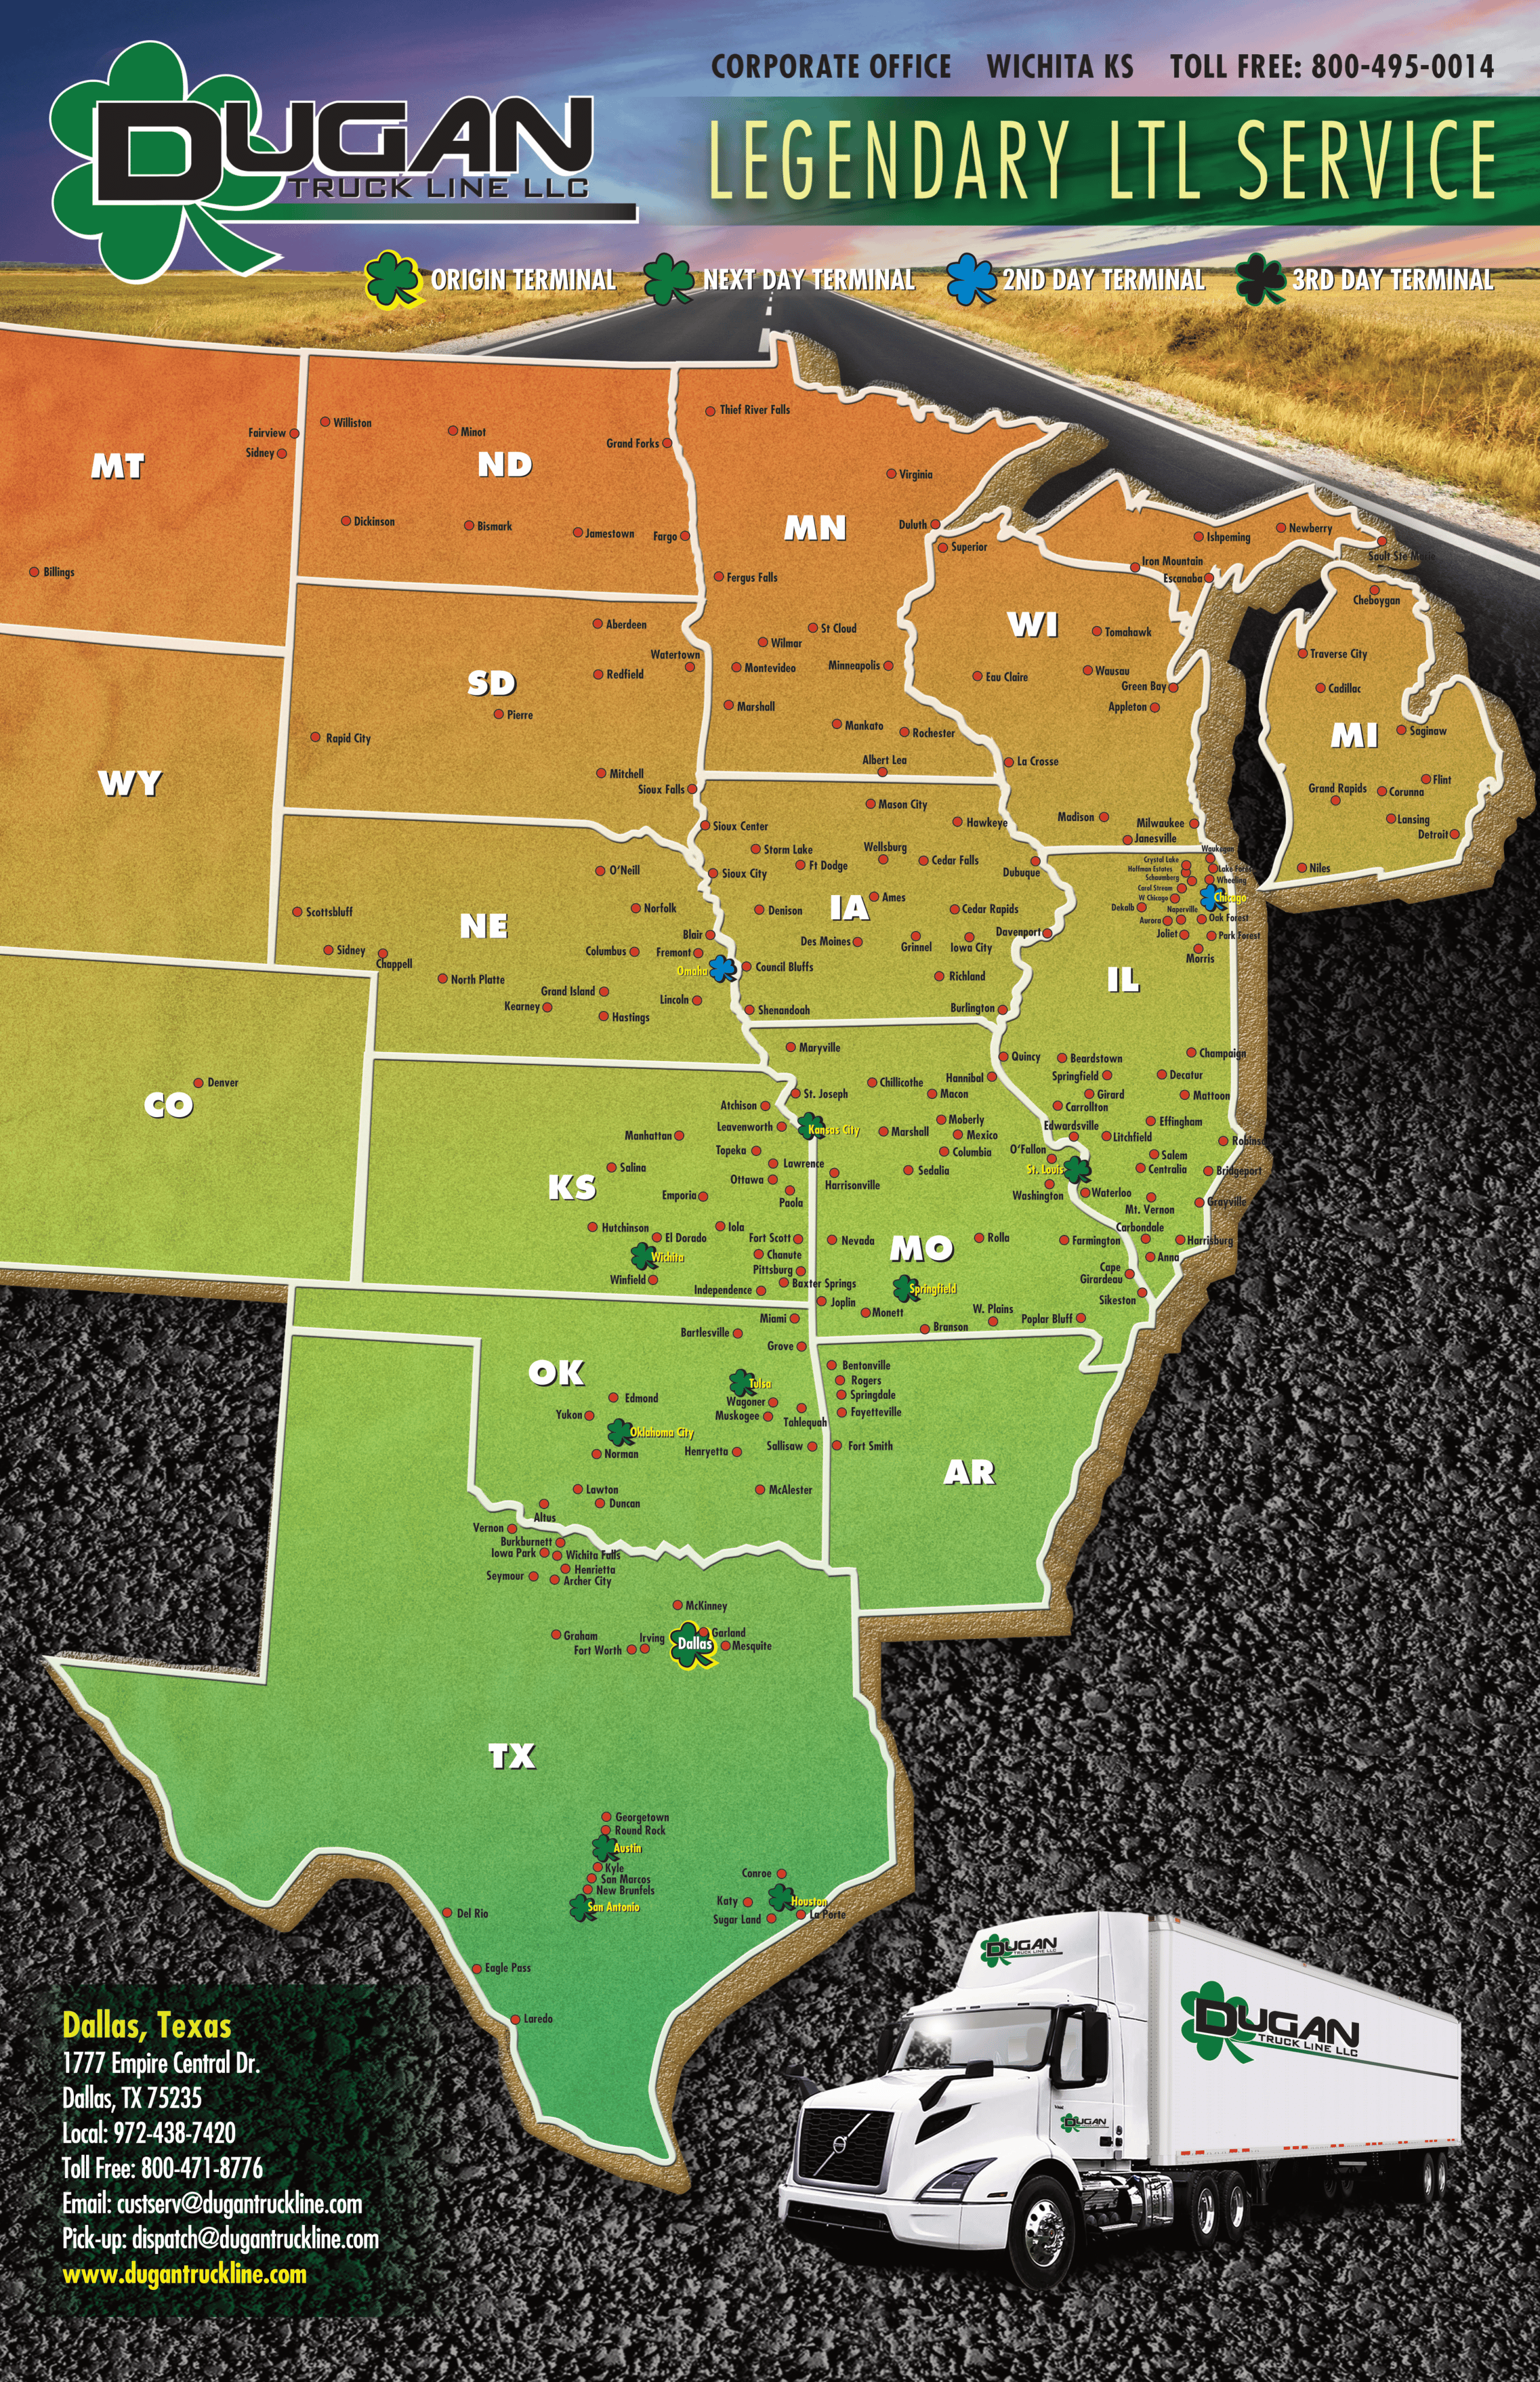 Dugan Maps Dallas - Dallas LTL Service Map - LTL Overnight Freight Shipping Services | Dugan Truck Line